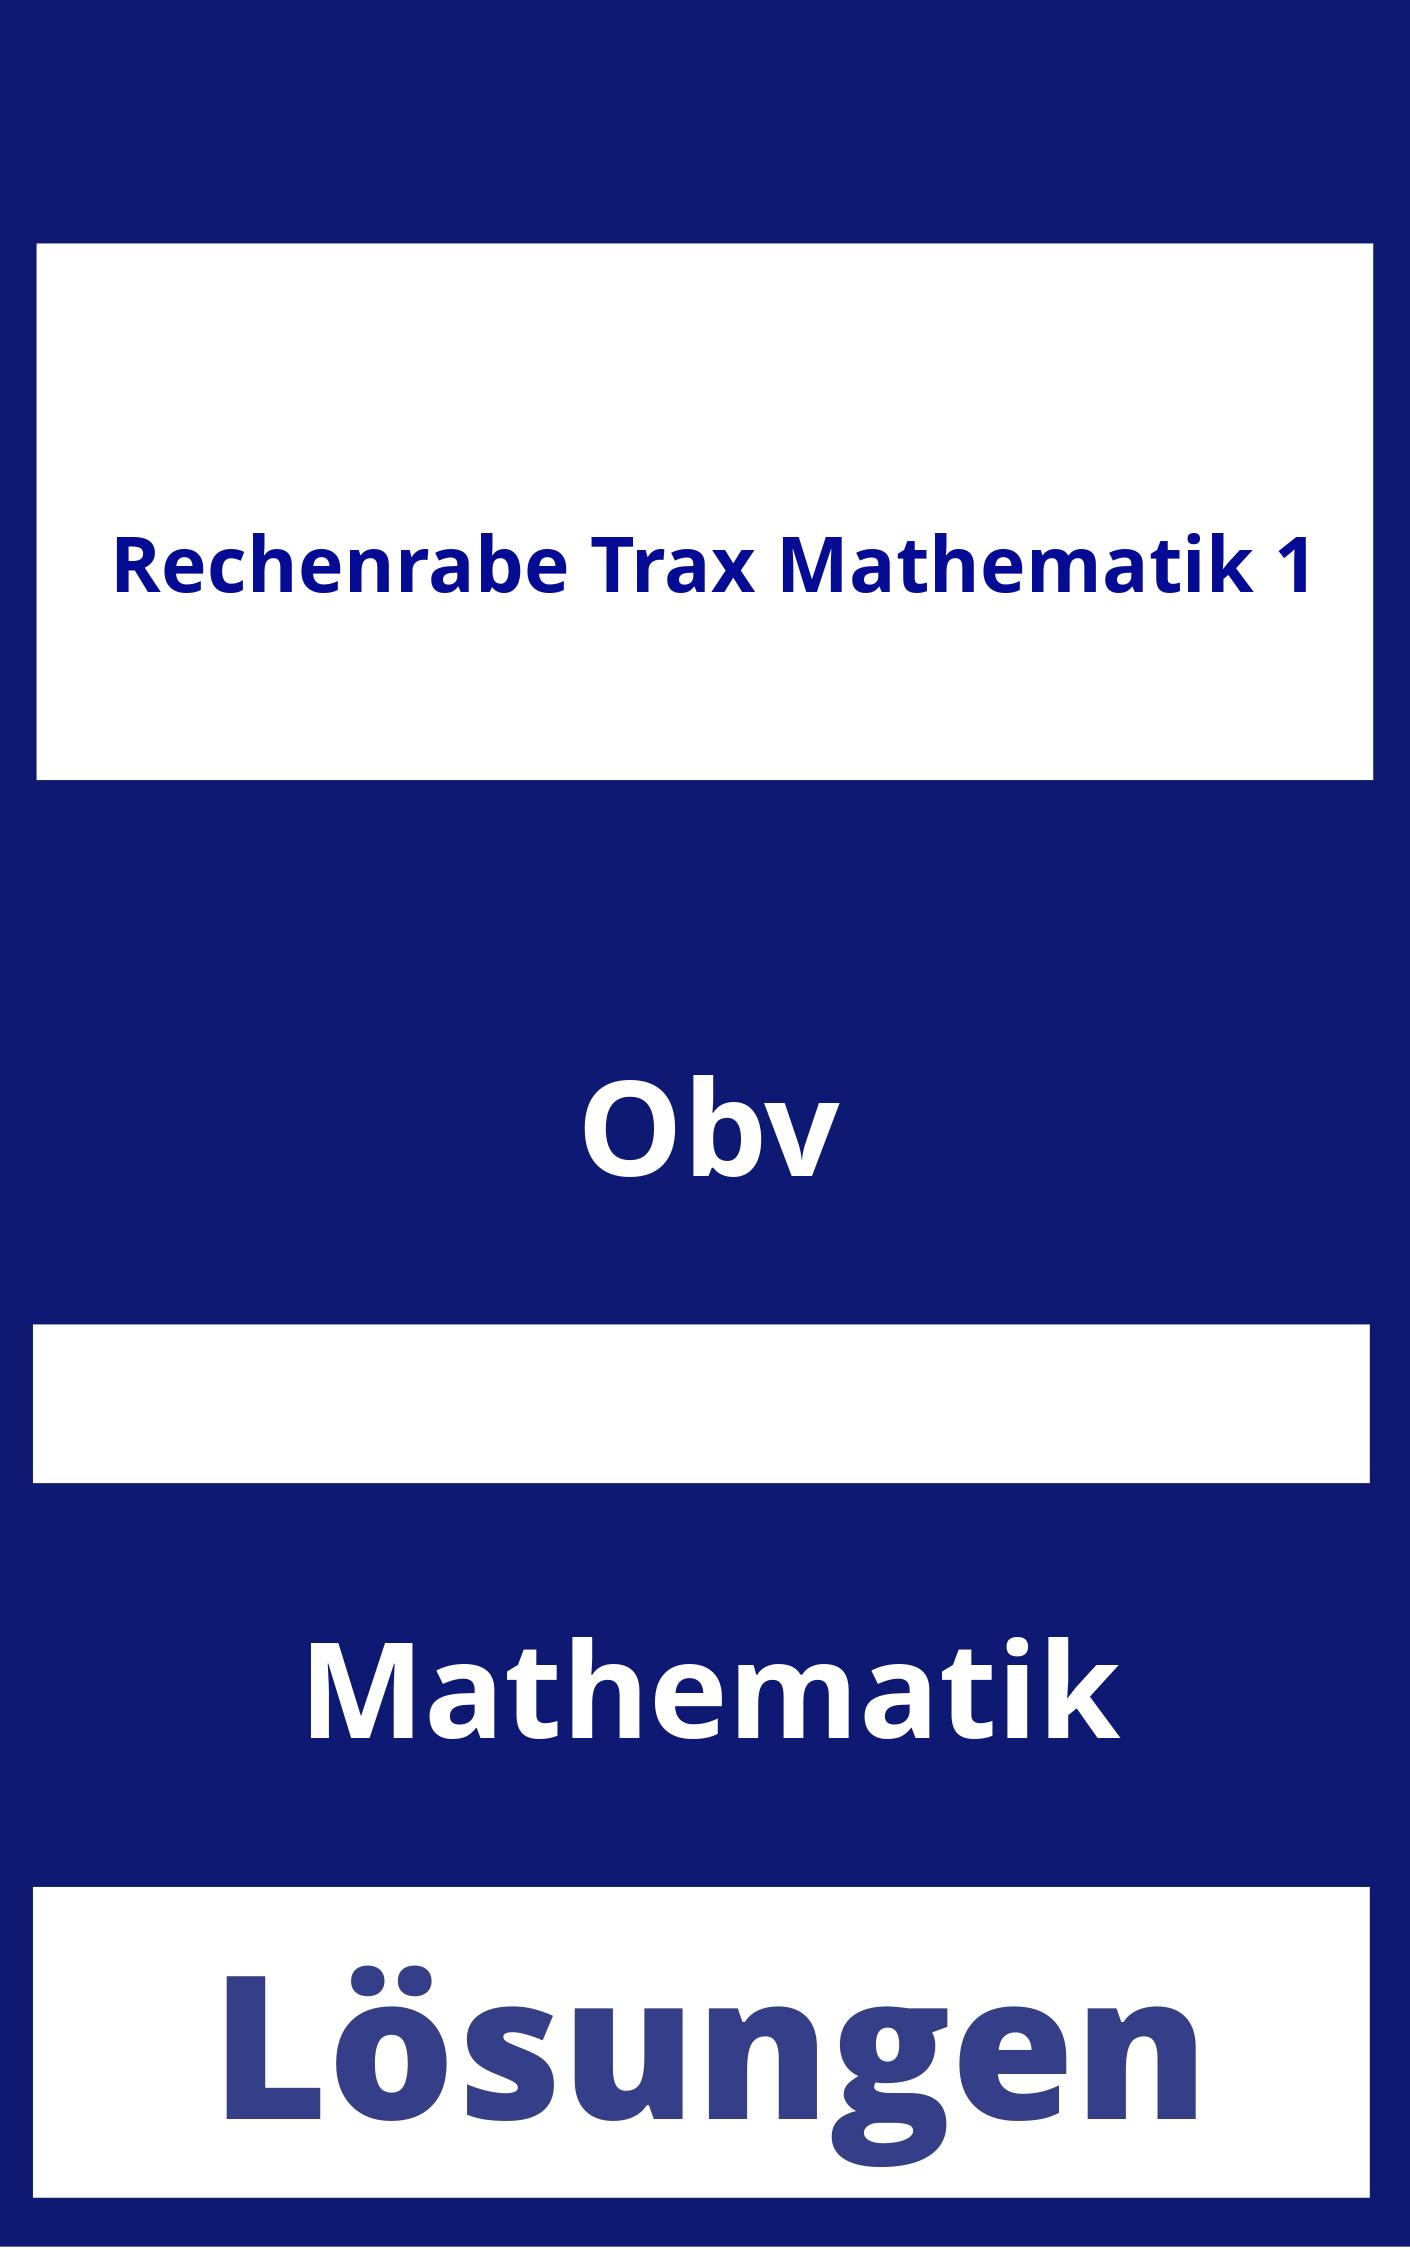 Rechenrabe Trax Mathematik 1 Lösungen PDF